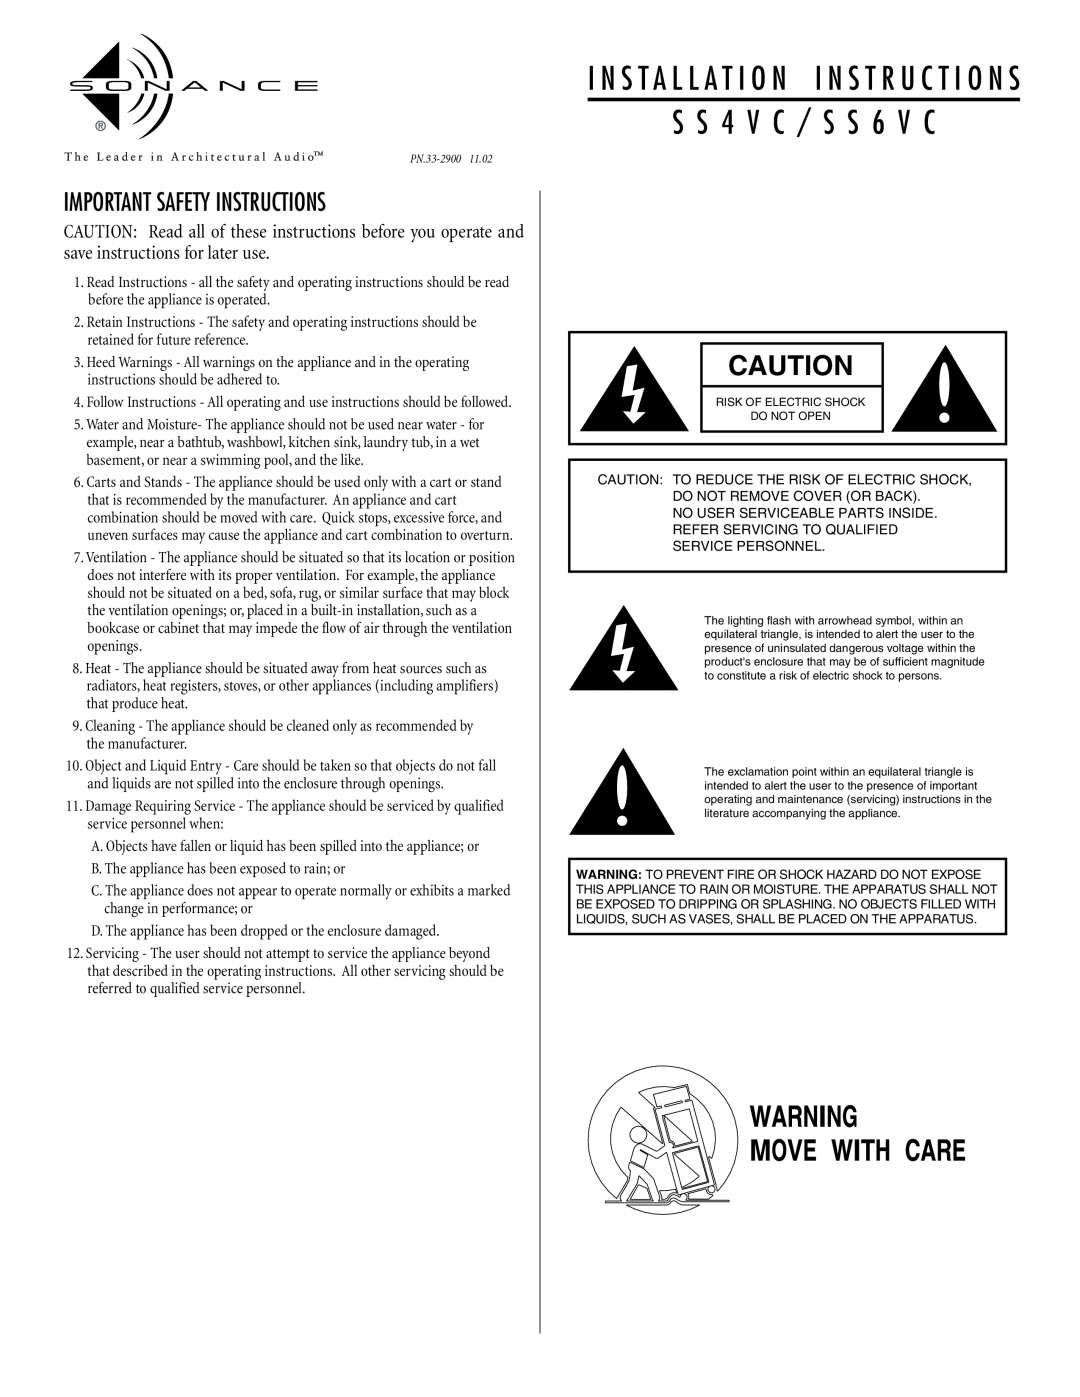 Sonance SS4VC, SS6VC important safety instructions Important Safety Instructions, S S 4 V C / S S 6 V C 